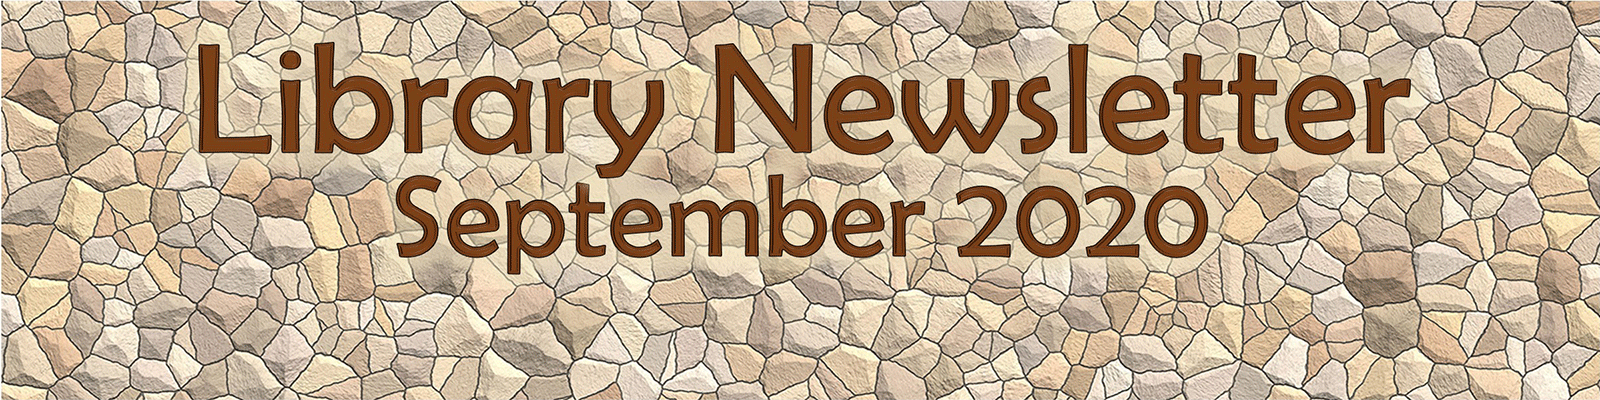 Library Newsletter September 2020 Stone Background